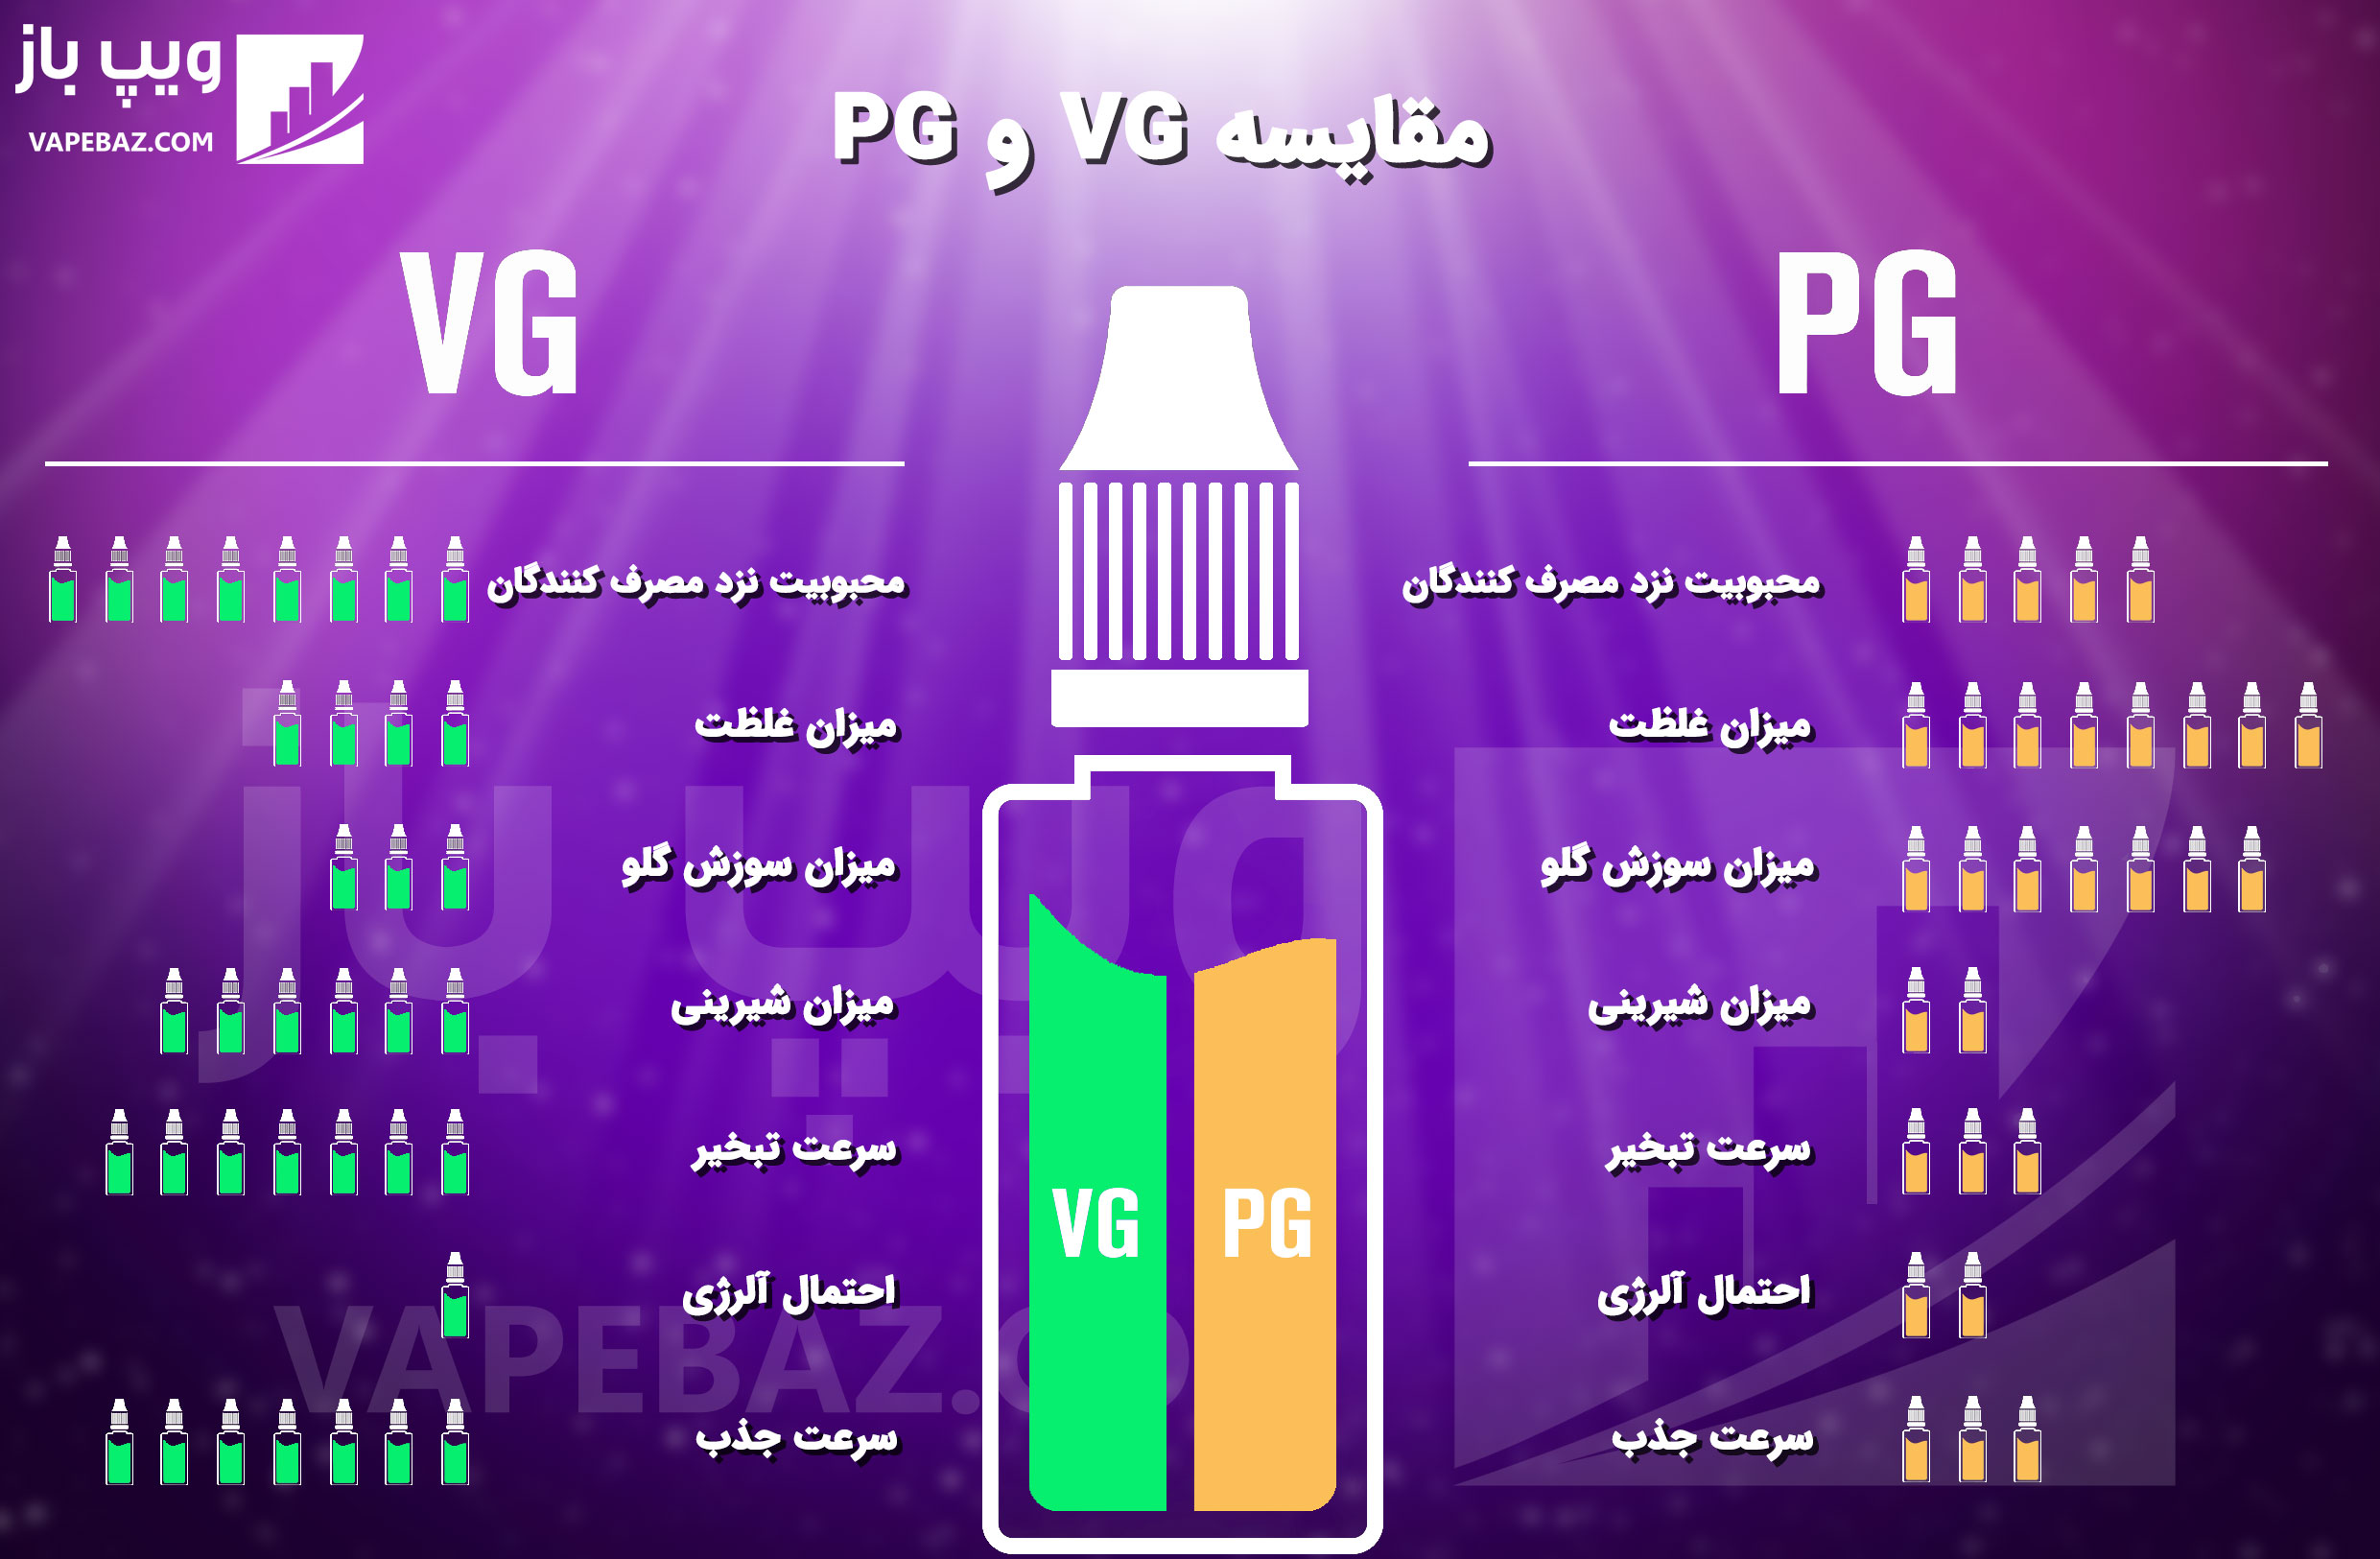 تفاوت بین PG و VG چیست و در خرید ایجوس کدام موثر است 